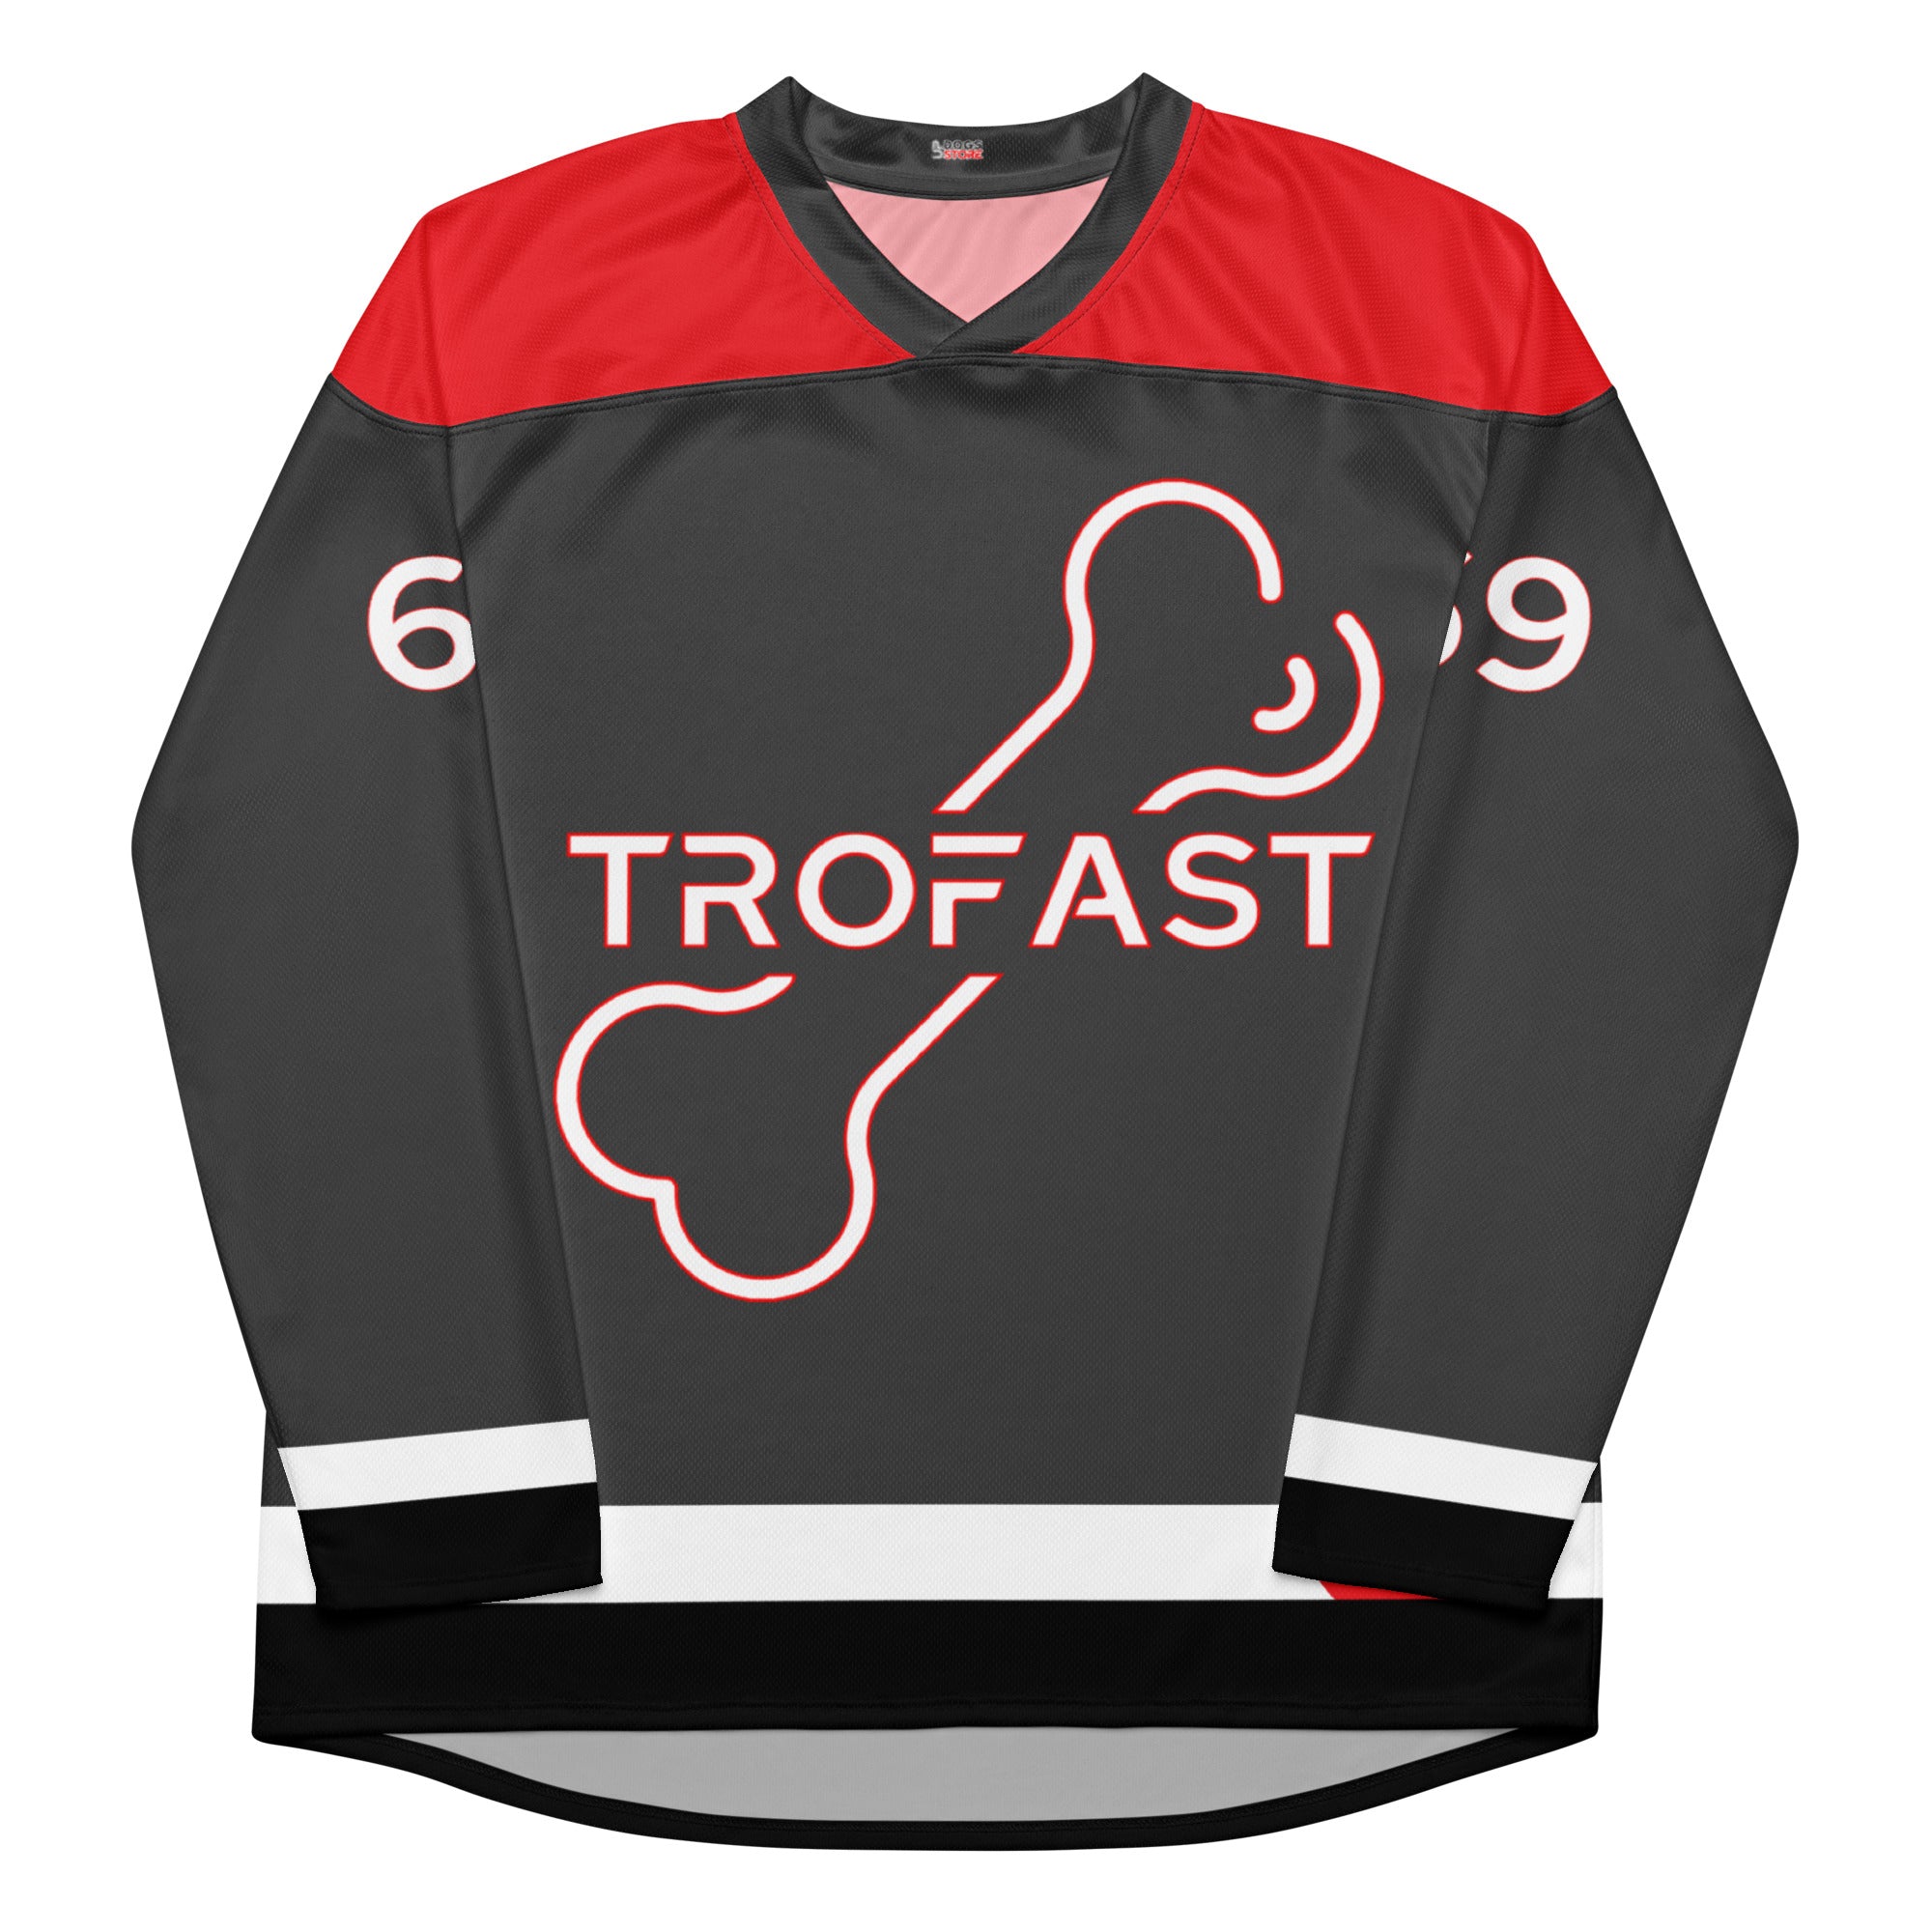 Retro Hockey-Jersey / Customize